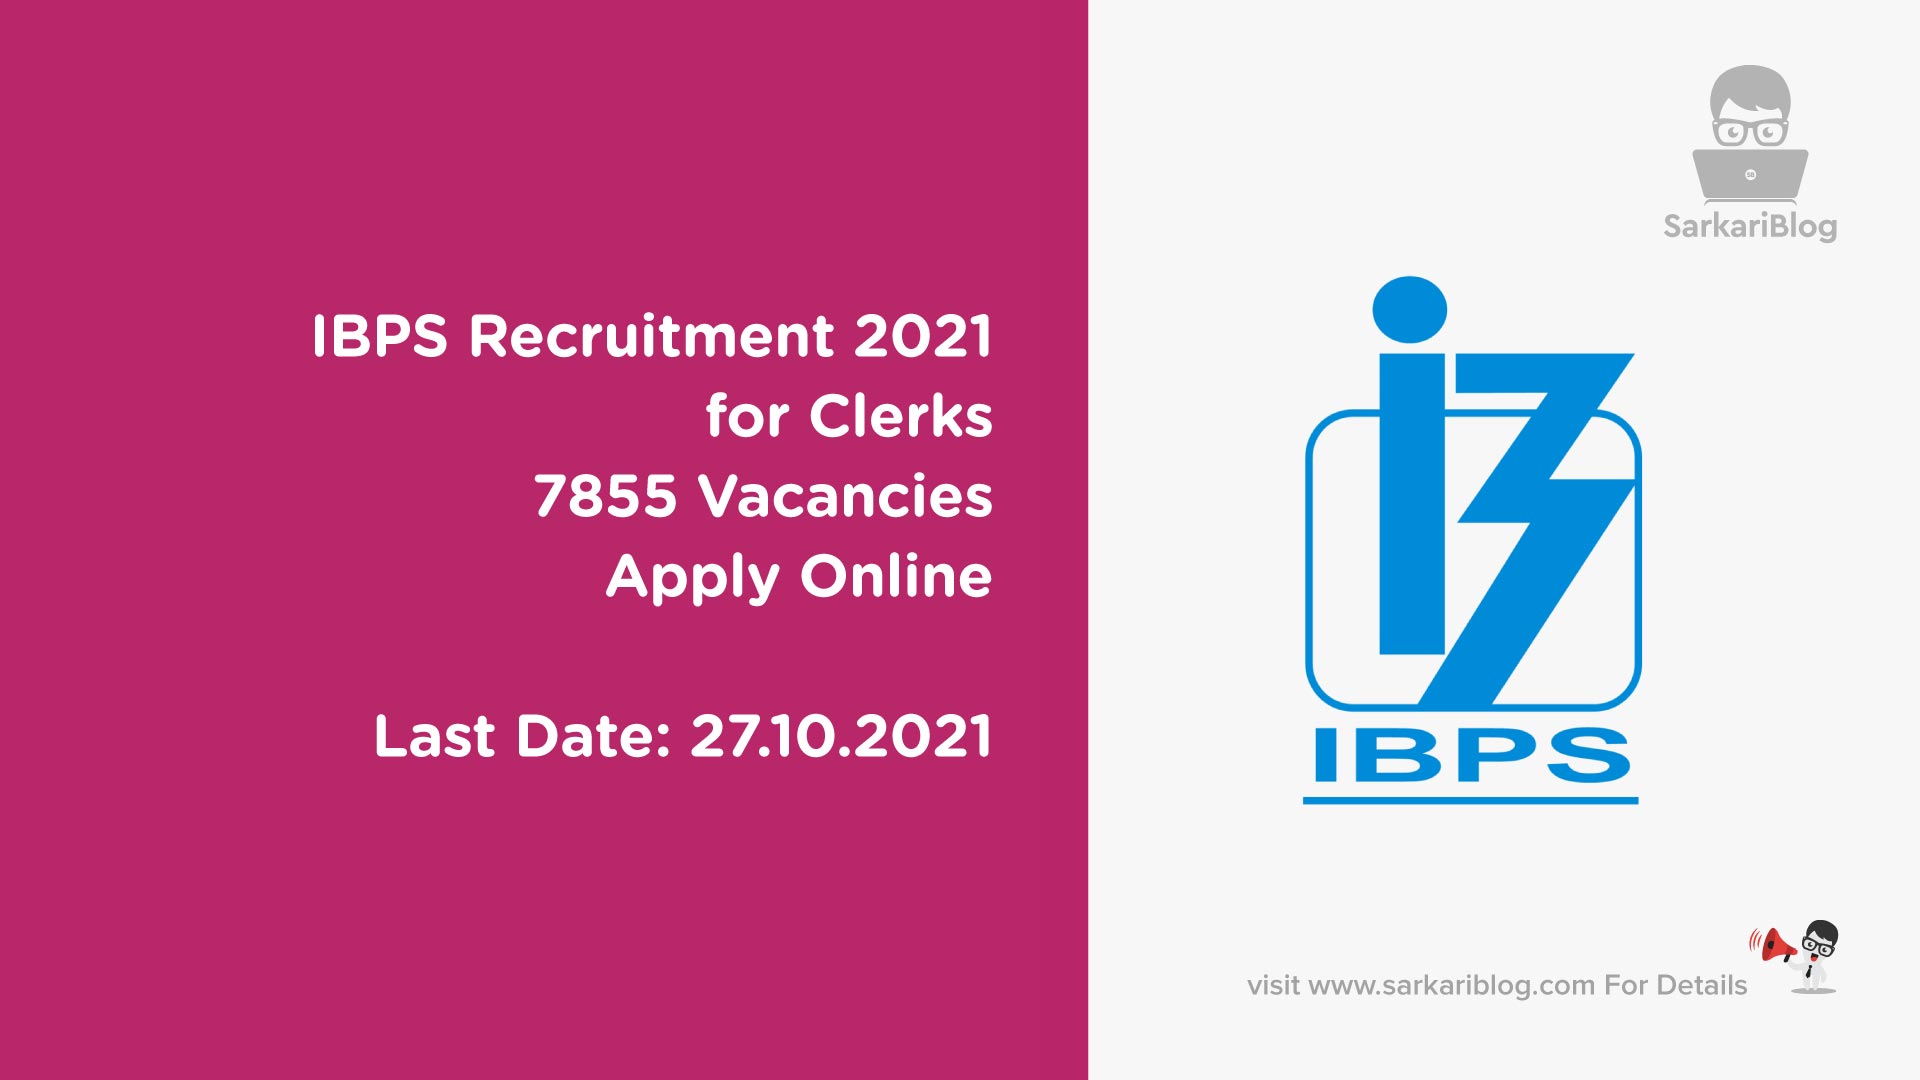 IBPS Recruitment 2021 for Clerks